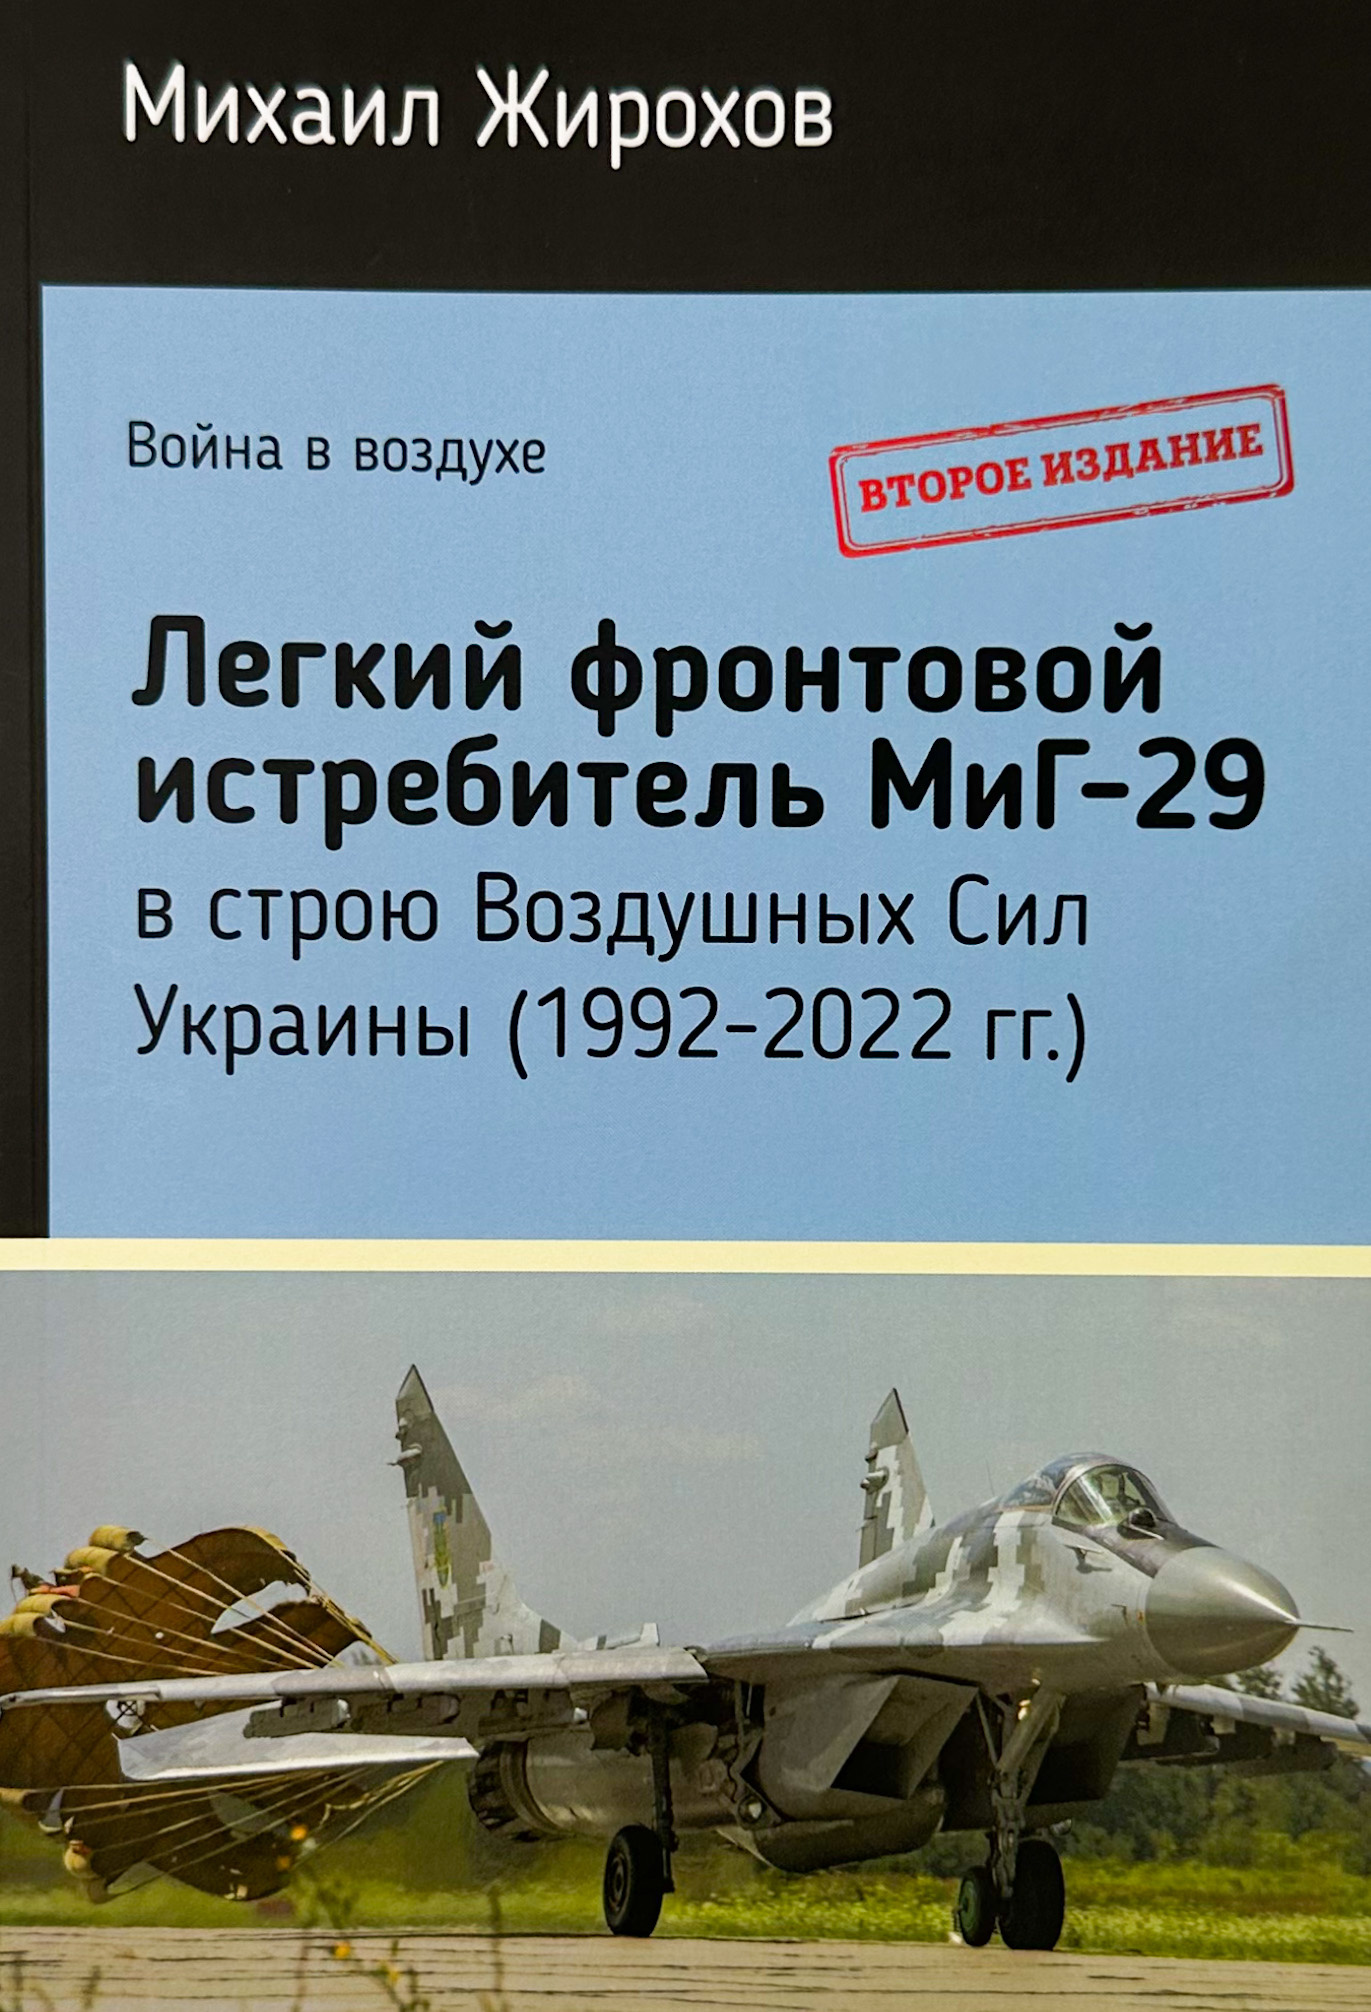 МиГ-29 в строю Воздушных Сил Украины (1992-2022 г.). Автор — Михайло Жирохов. 